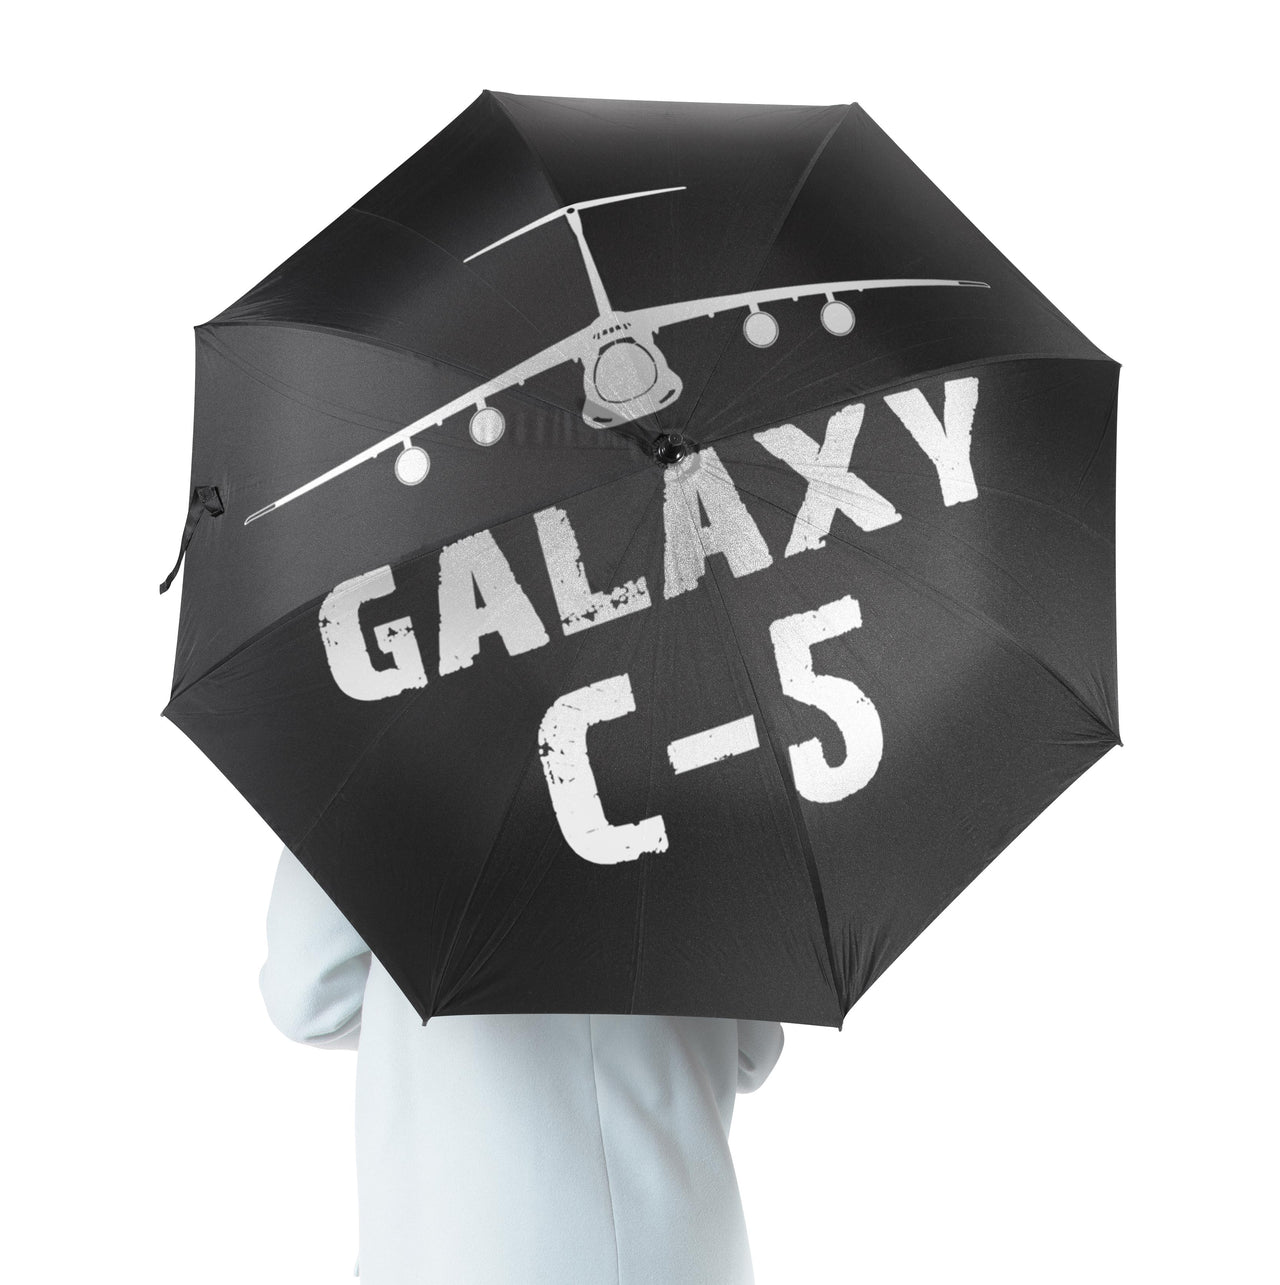 Galaxy C-5 & Plane Designed Umbrella